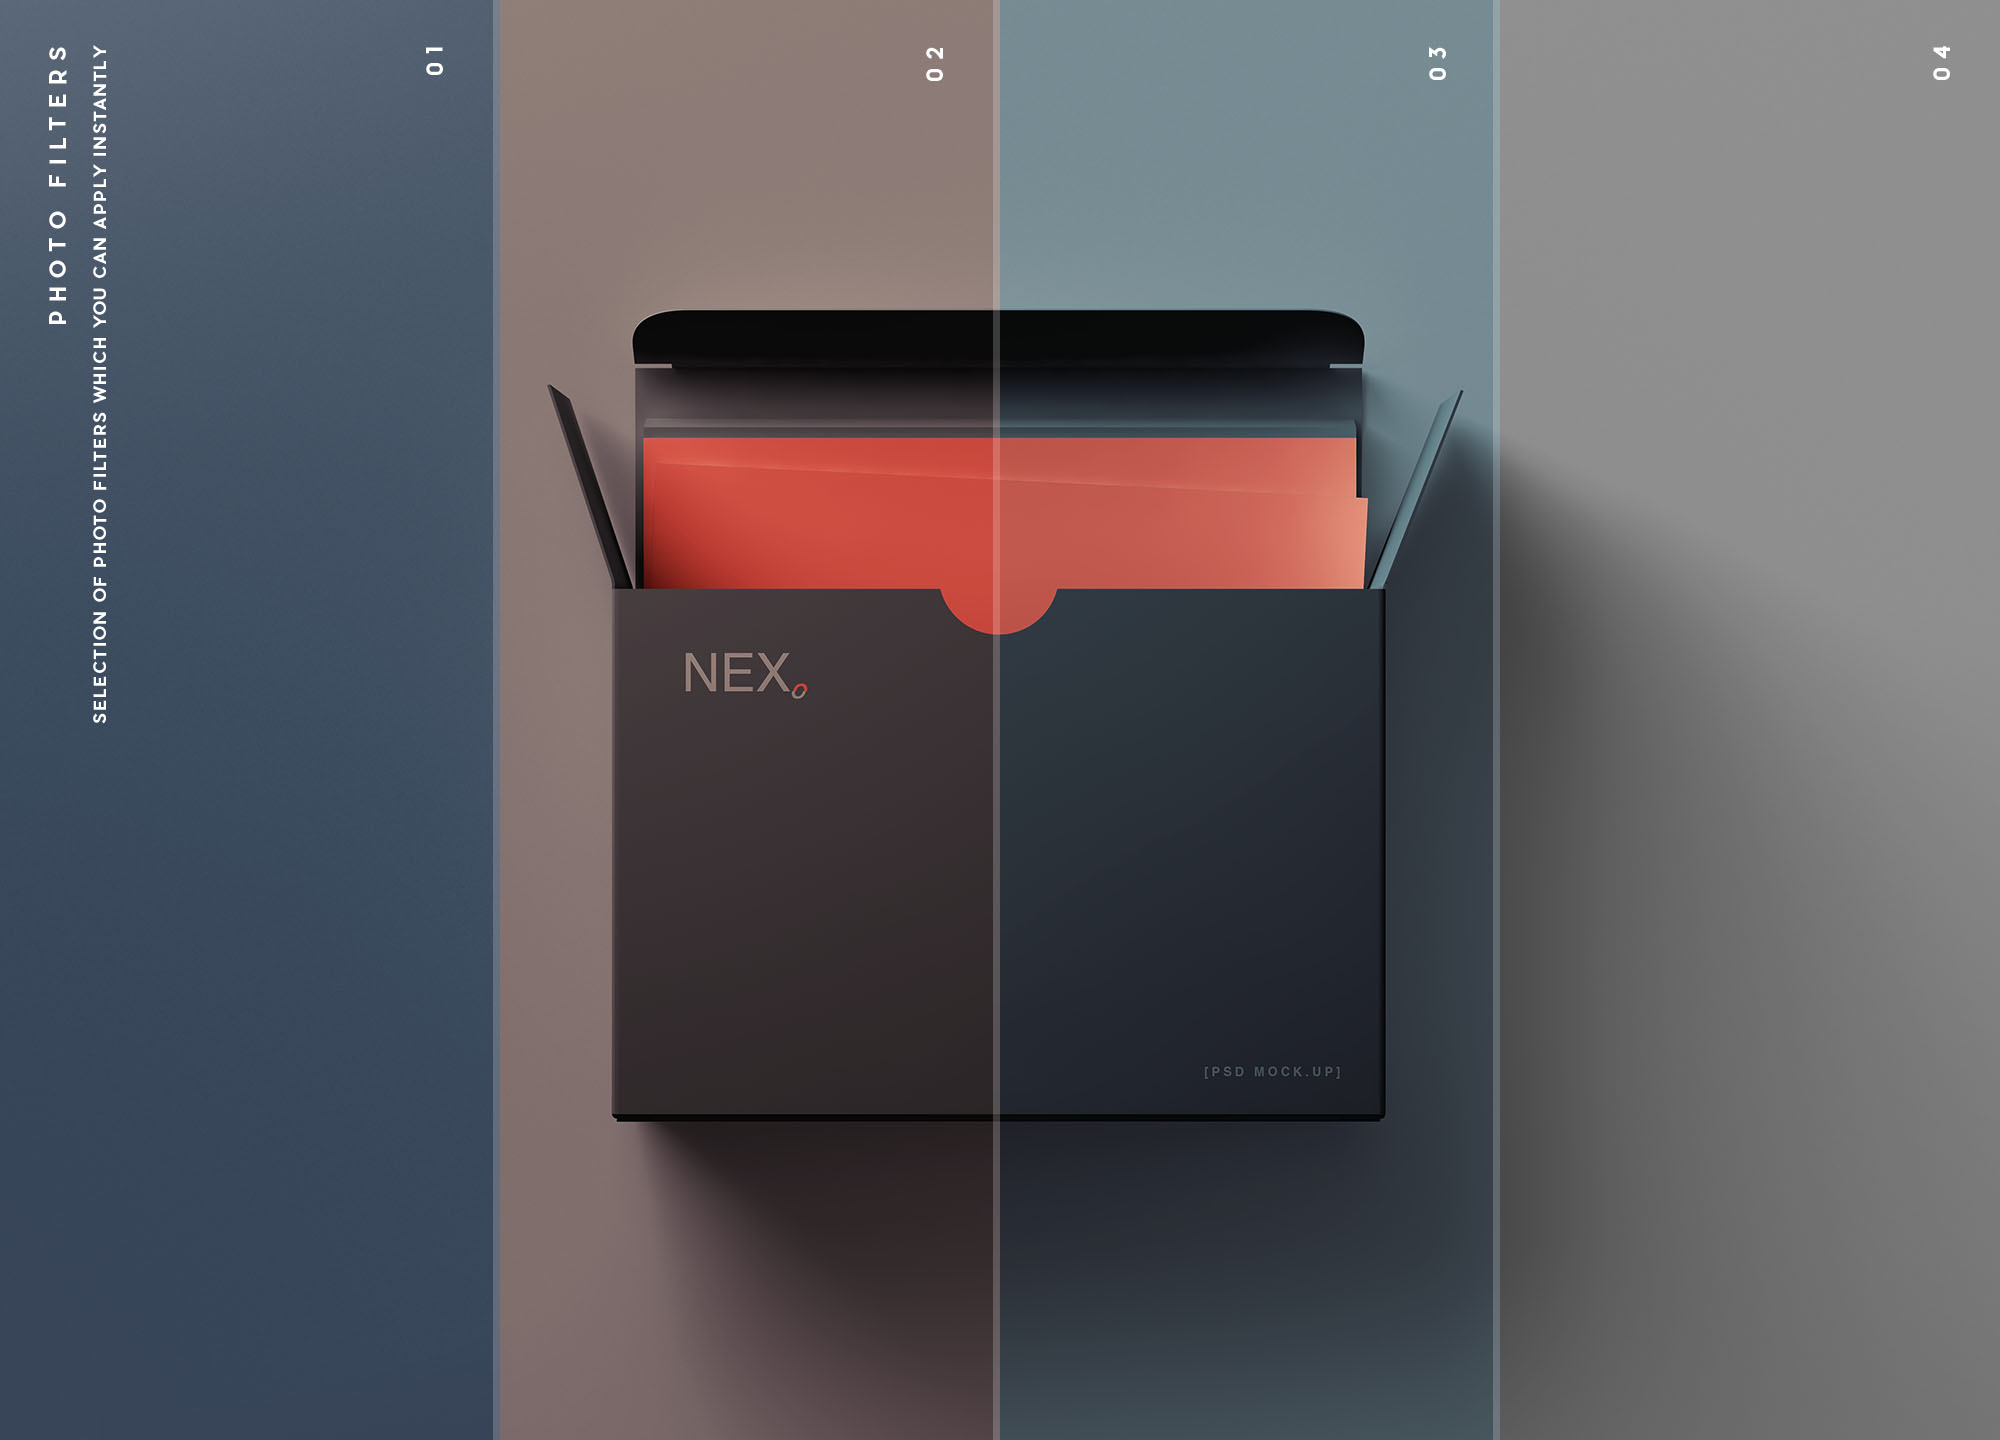 卡片包装盒外观设计效果图第一素材精选 Card Box Mockup插图(9)